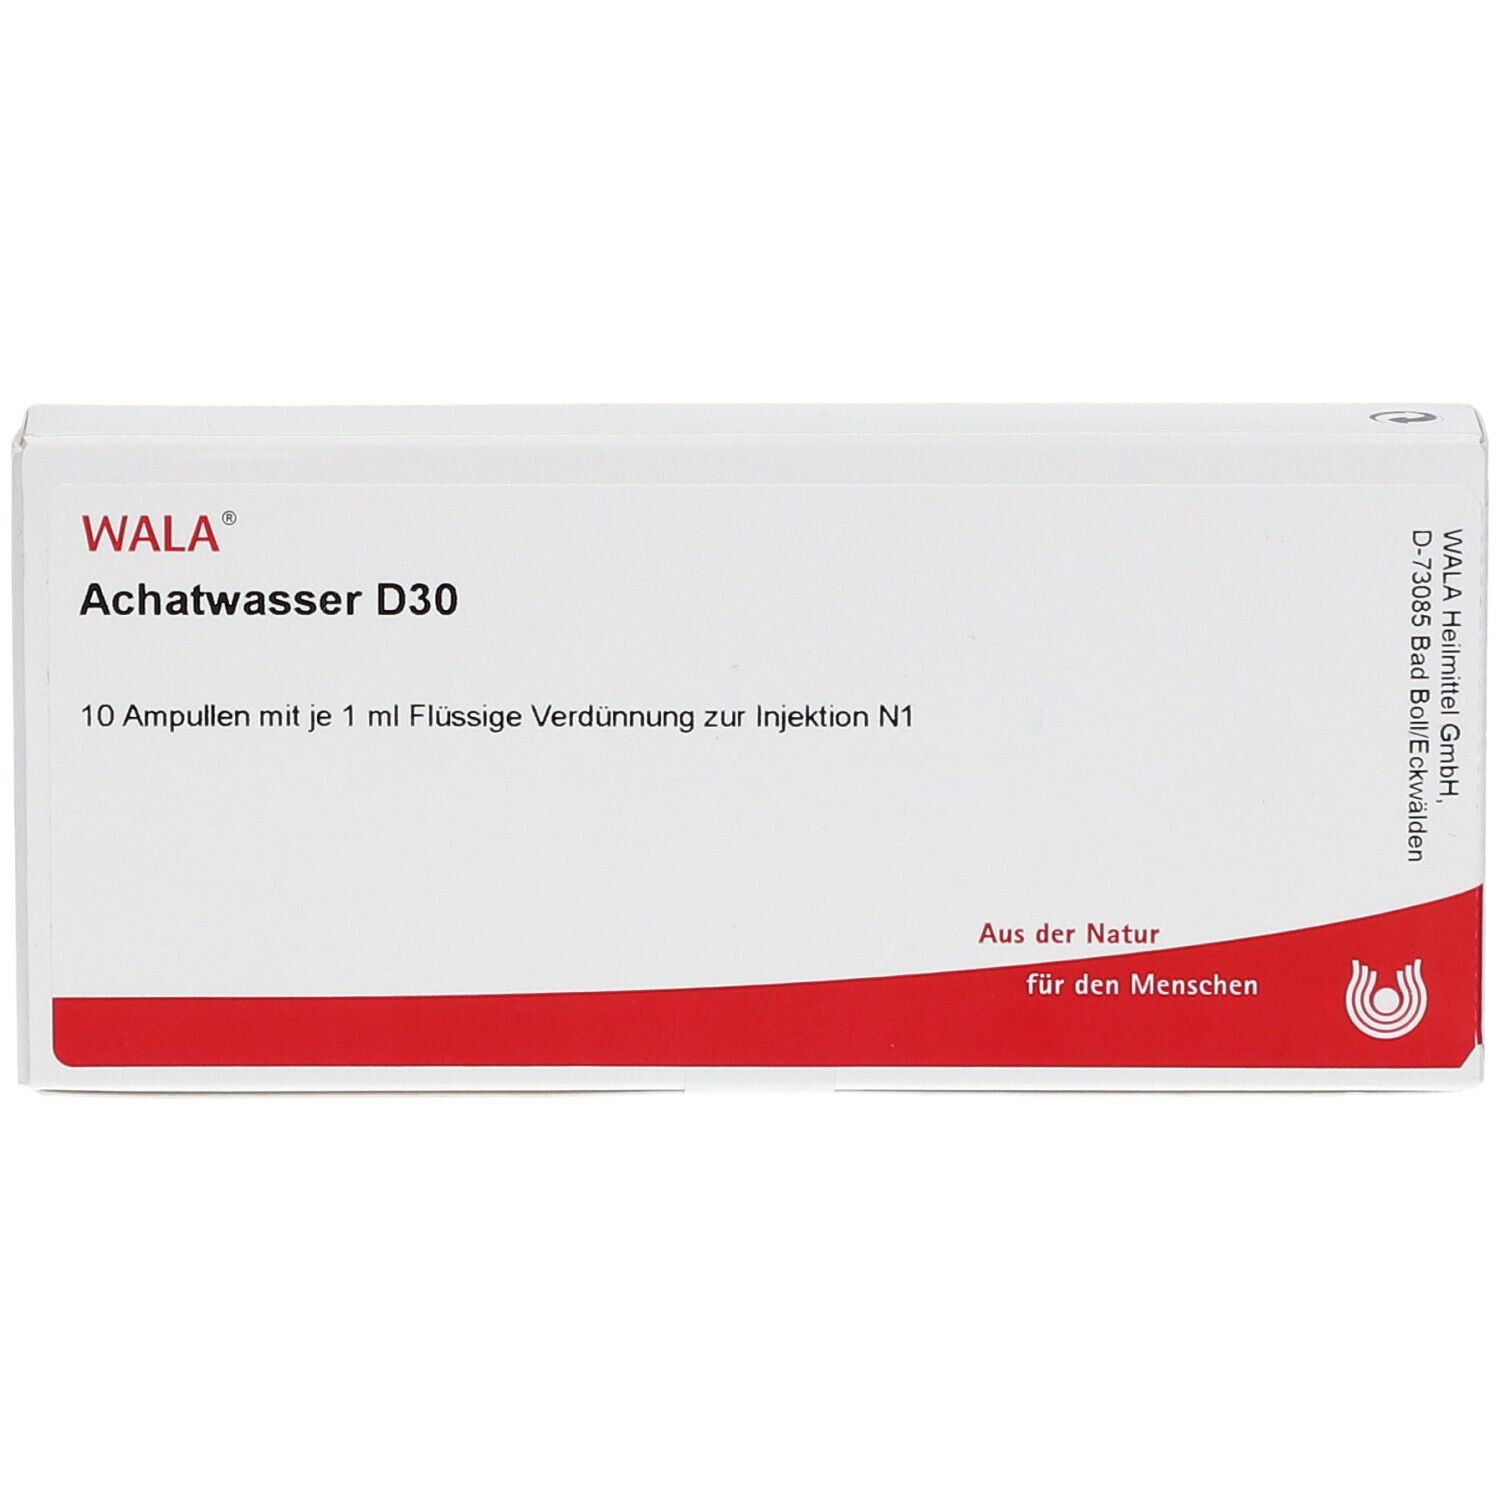 WALA® Achatwasser D 30